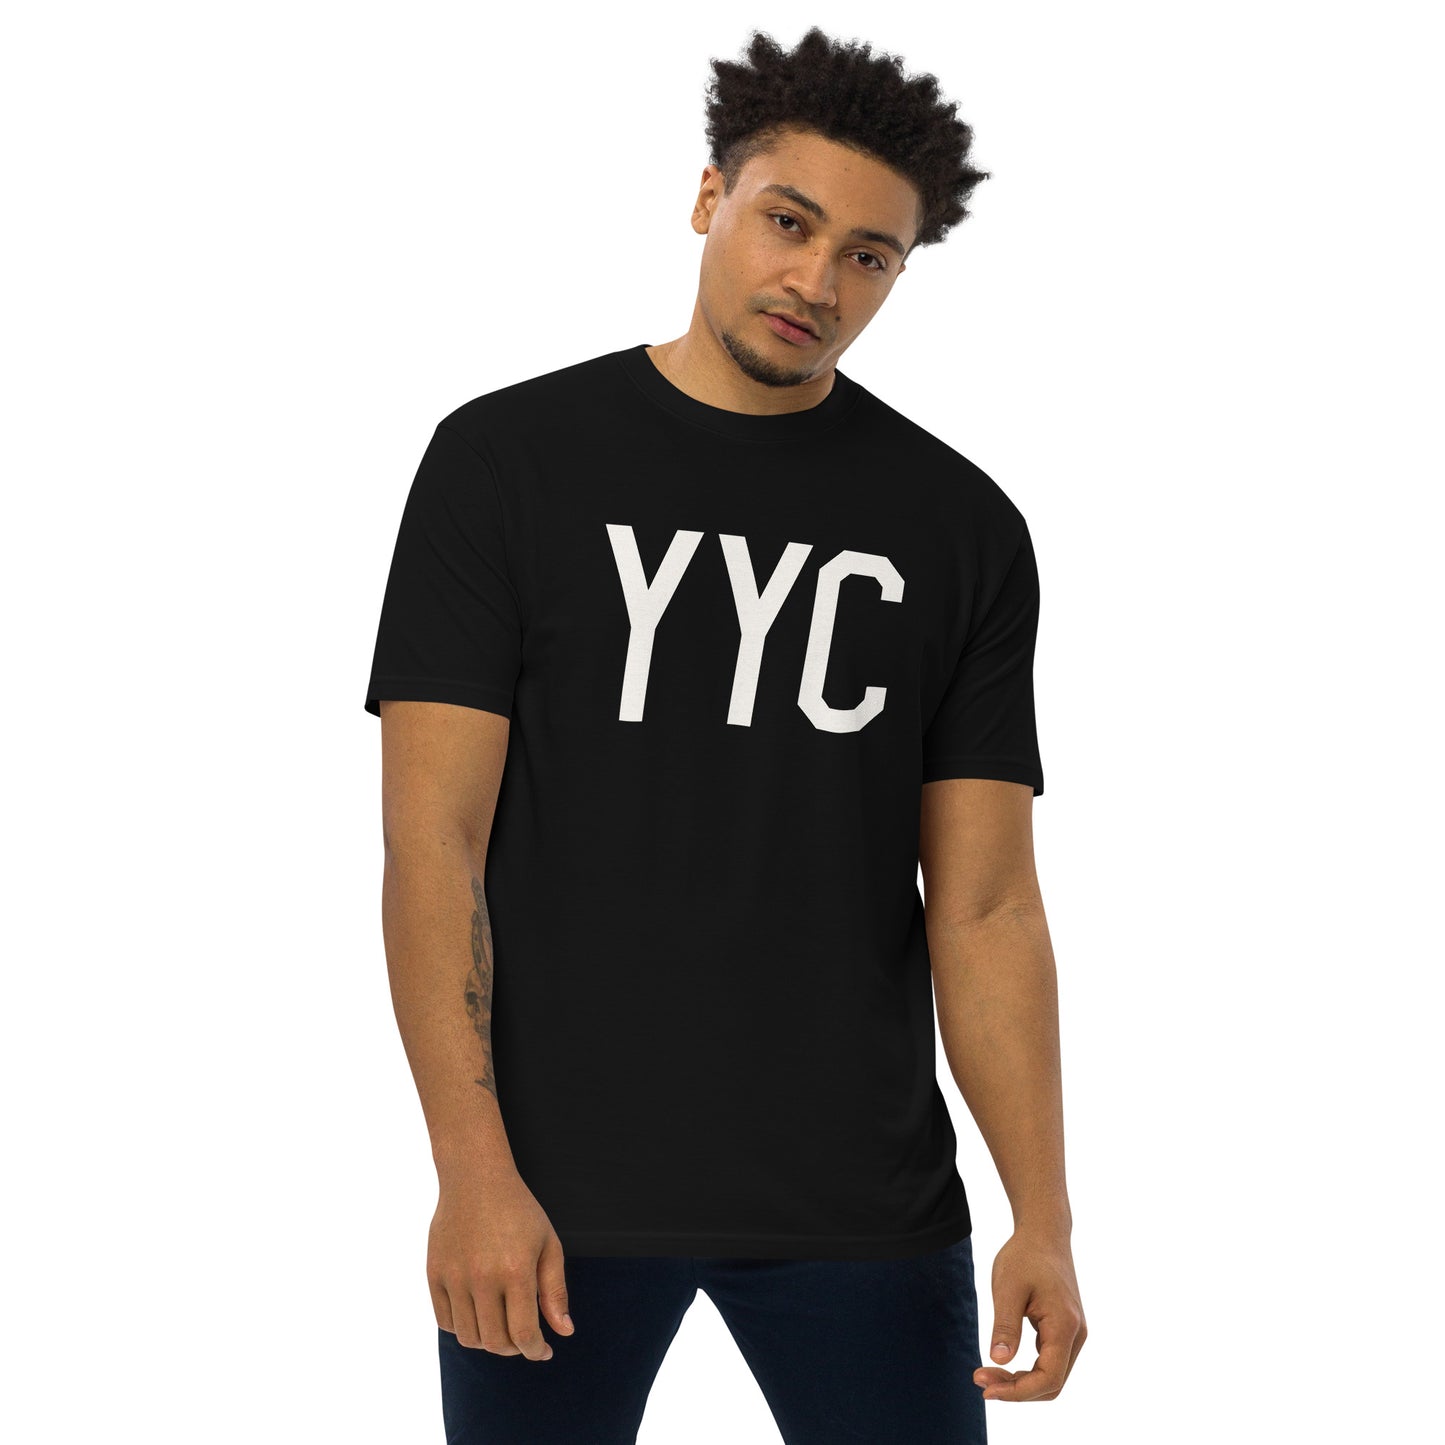 YYC Calgary Alberta Men's Premium Heavyweight T-Shirt